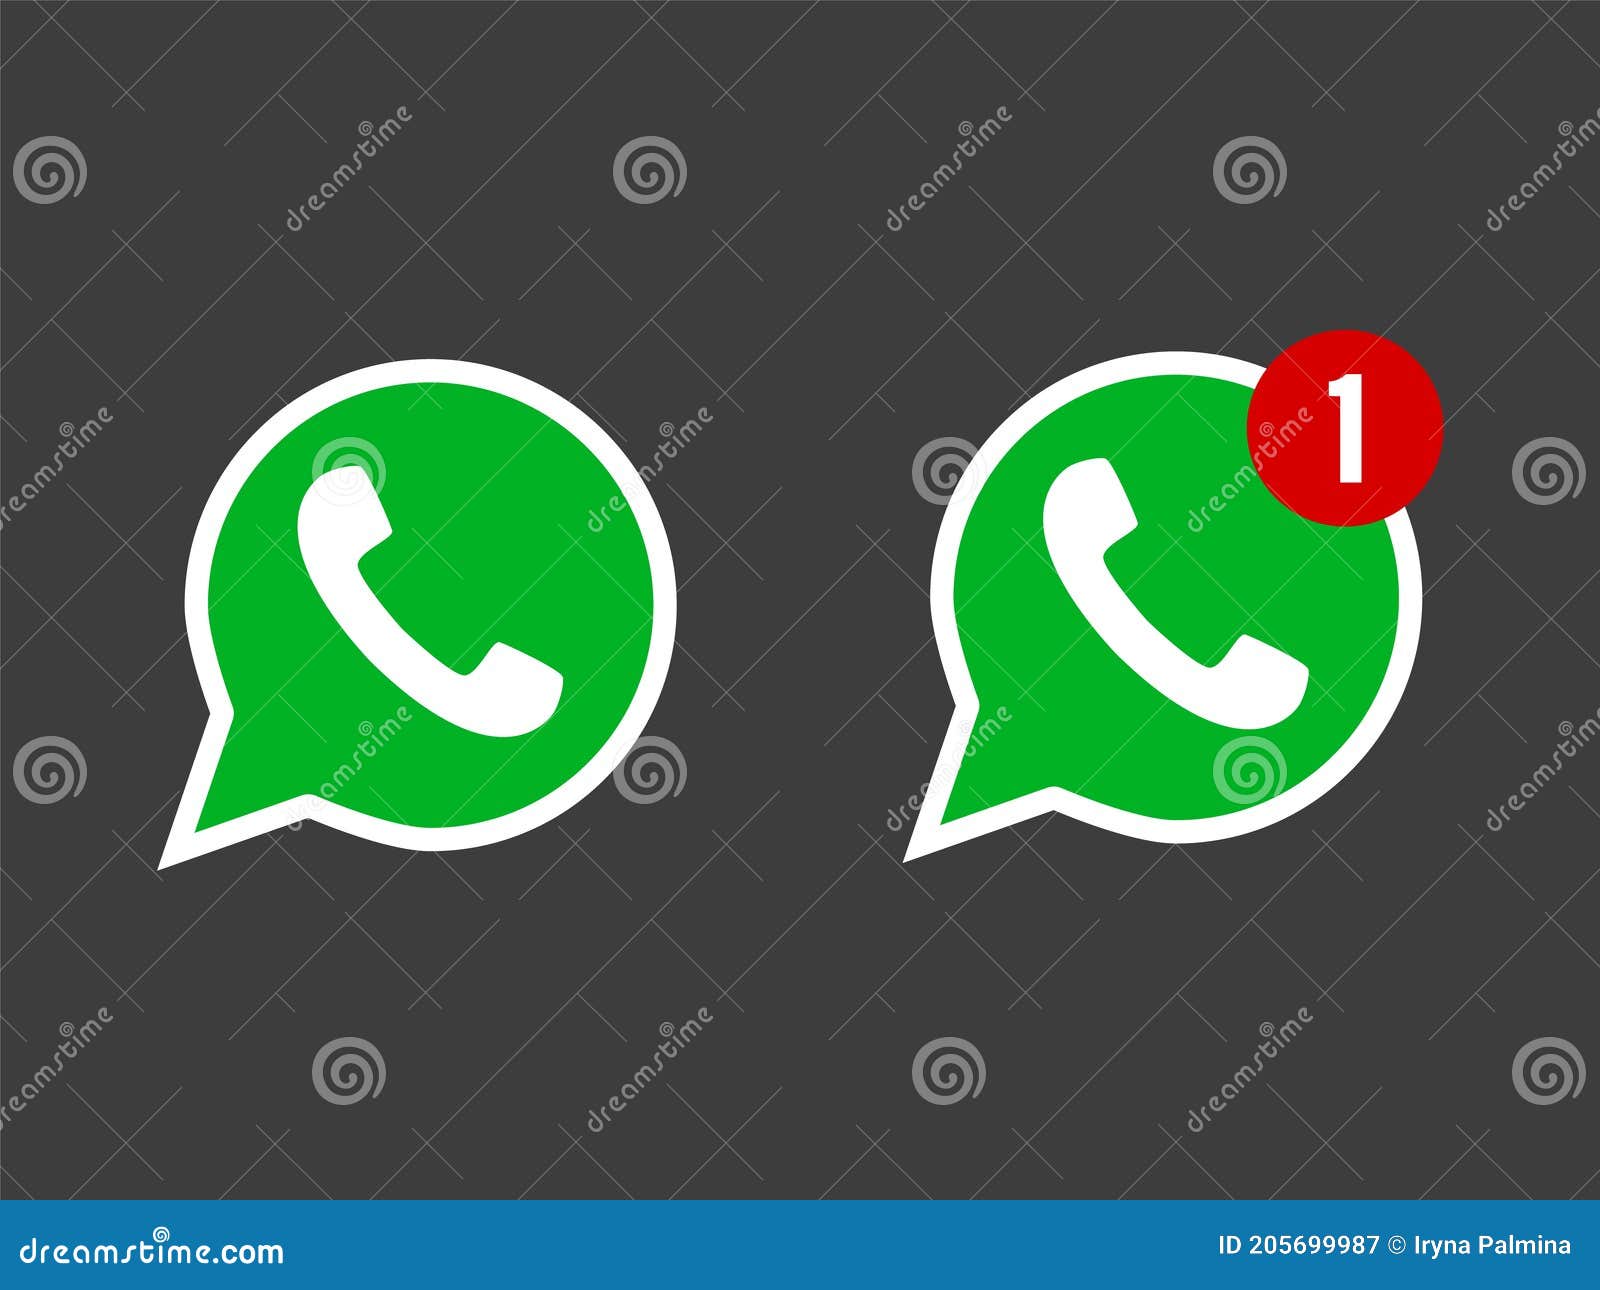 Telephone Icon Symbol Vector Whatsapp Logo Symbol Phone Pictogram